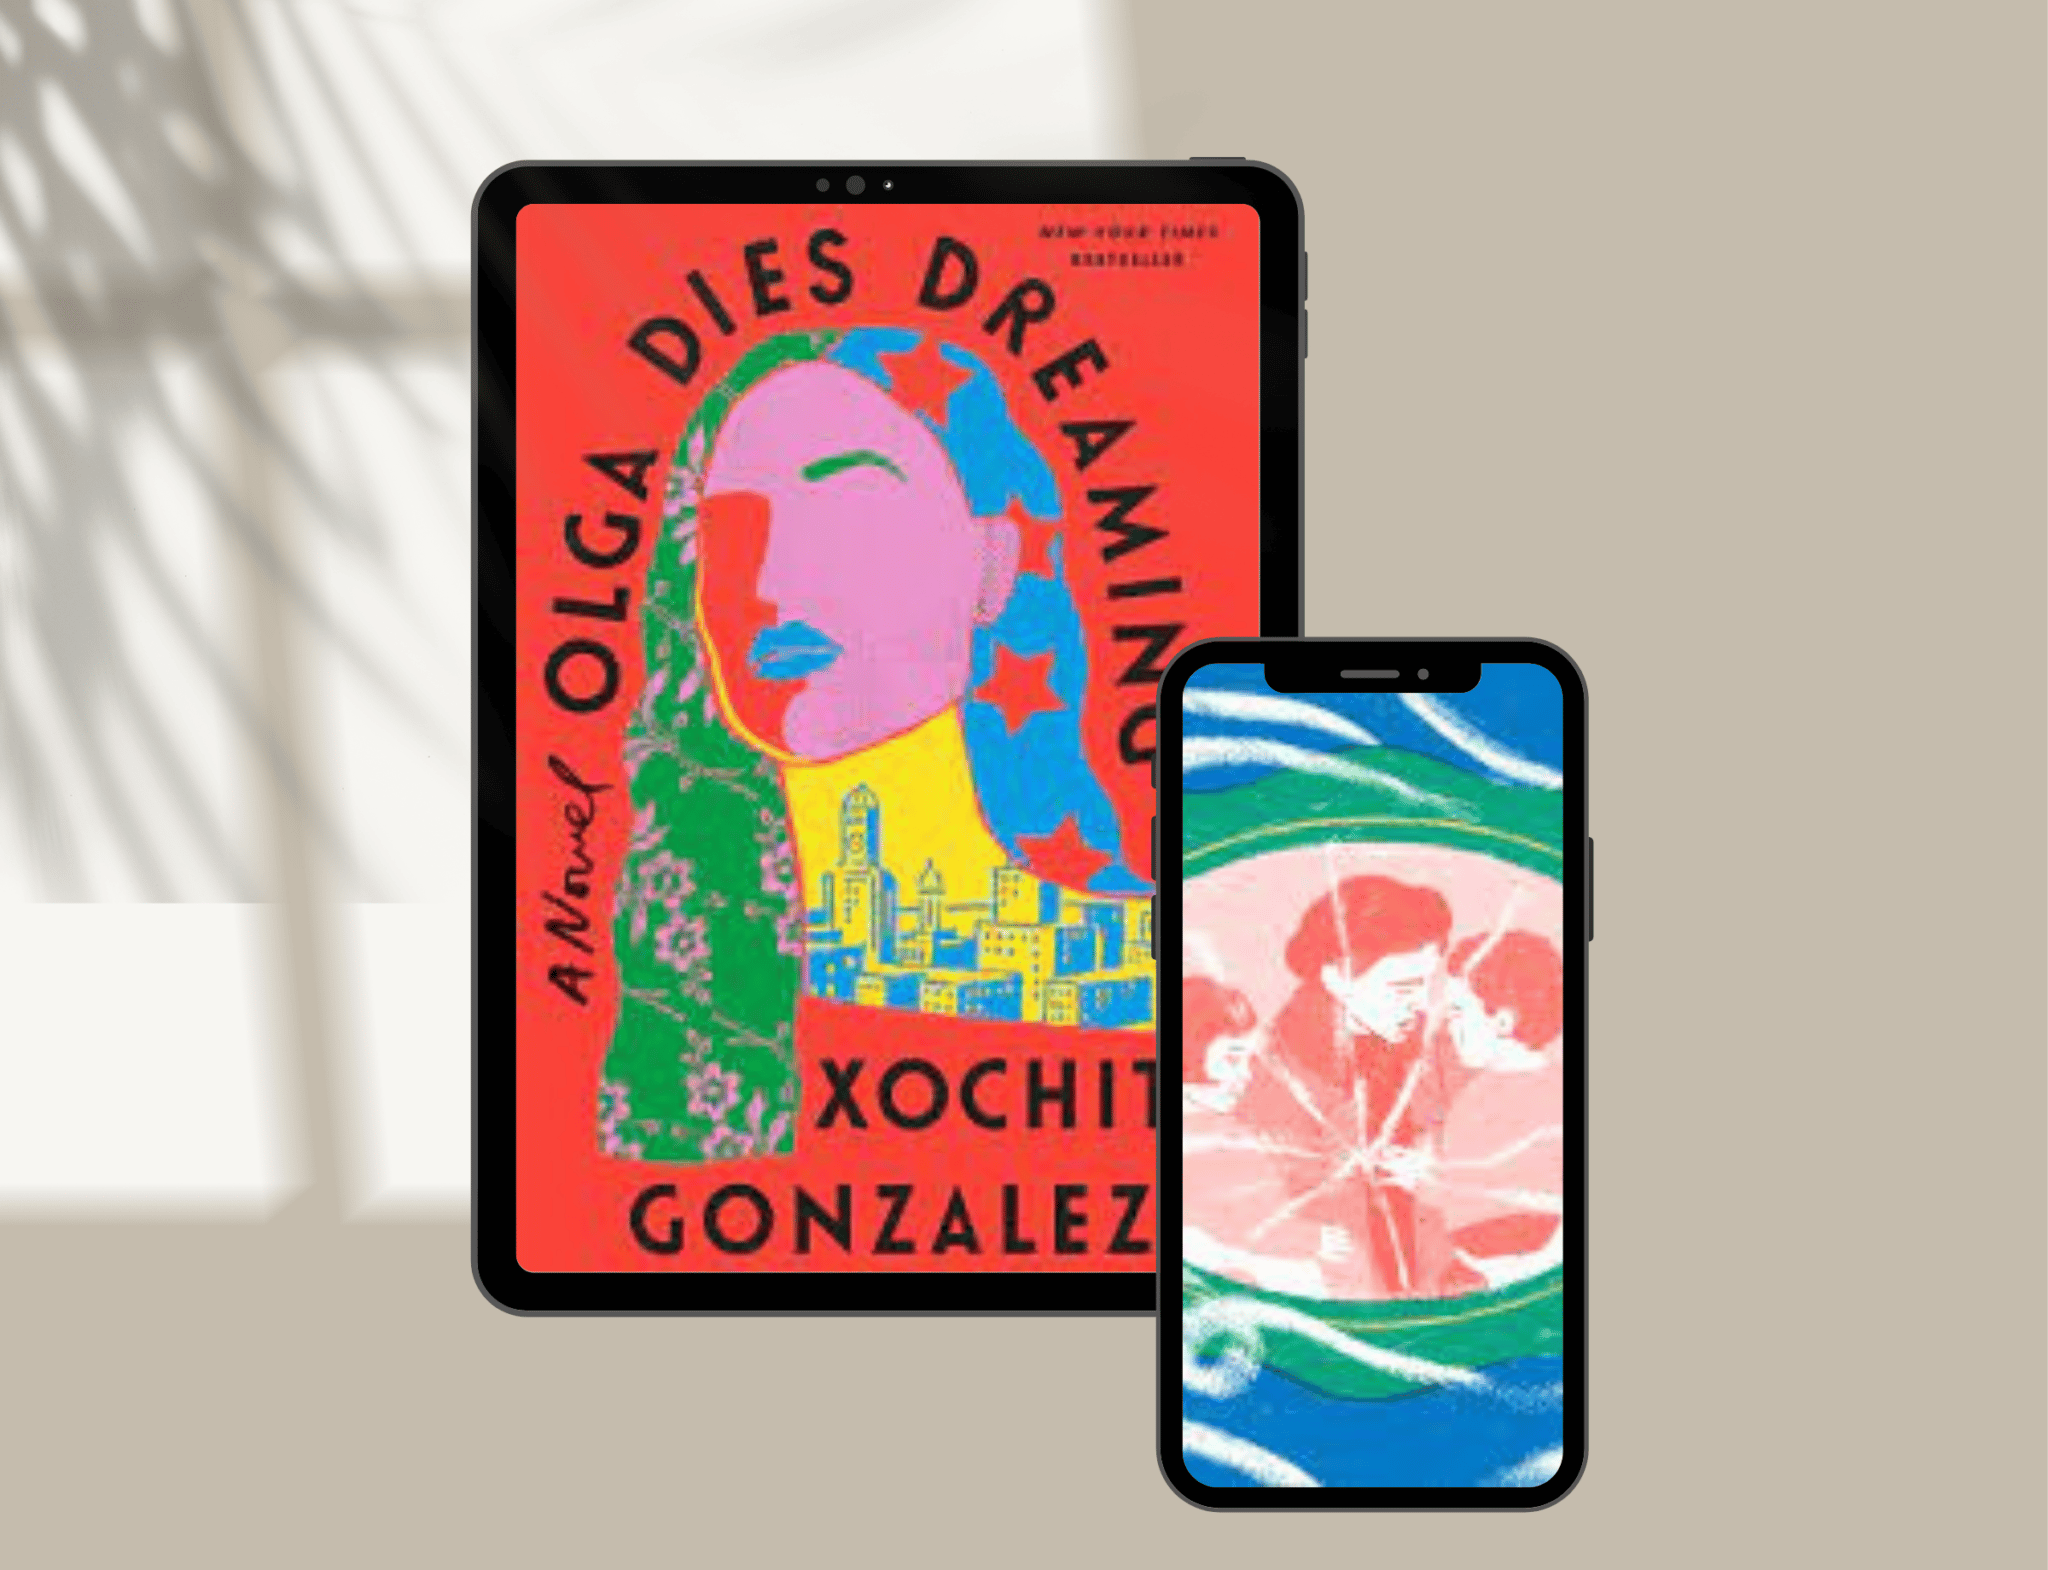 Olga Dies Dreaming book on Kindle